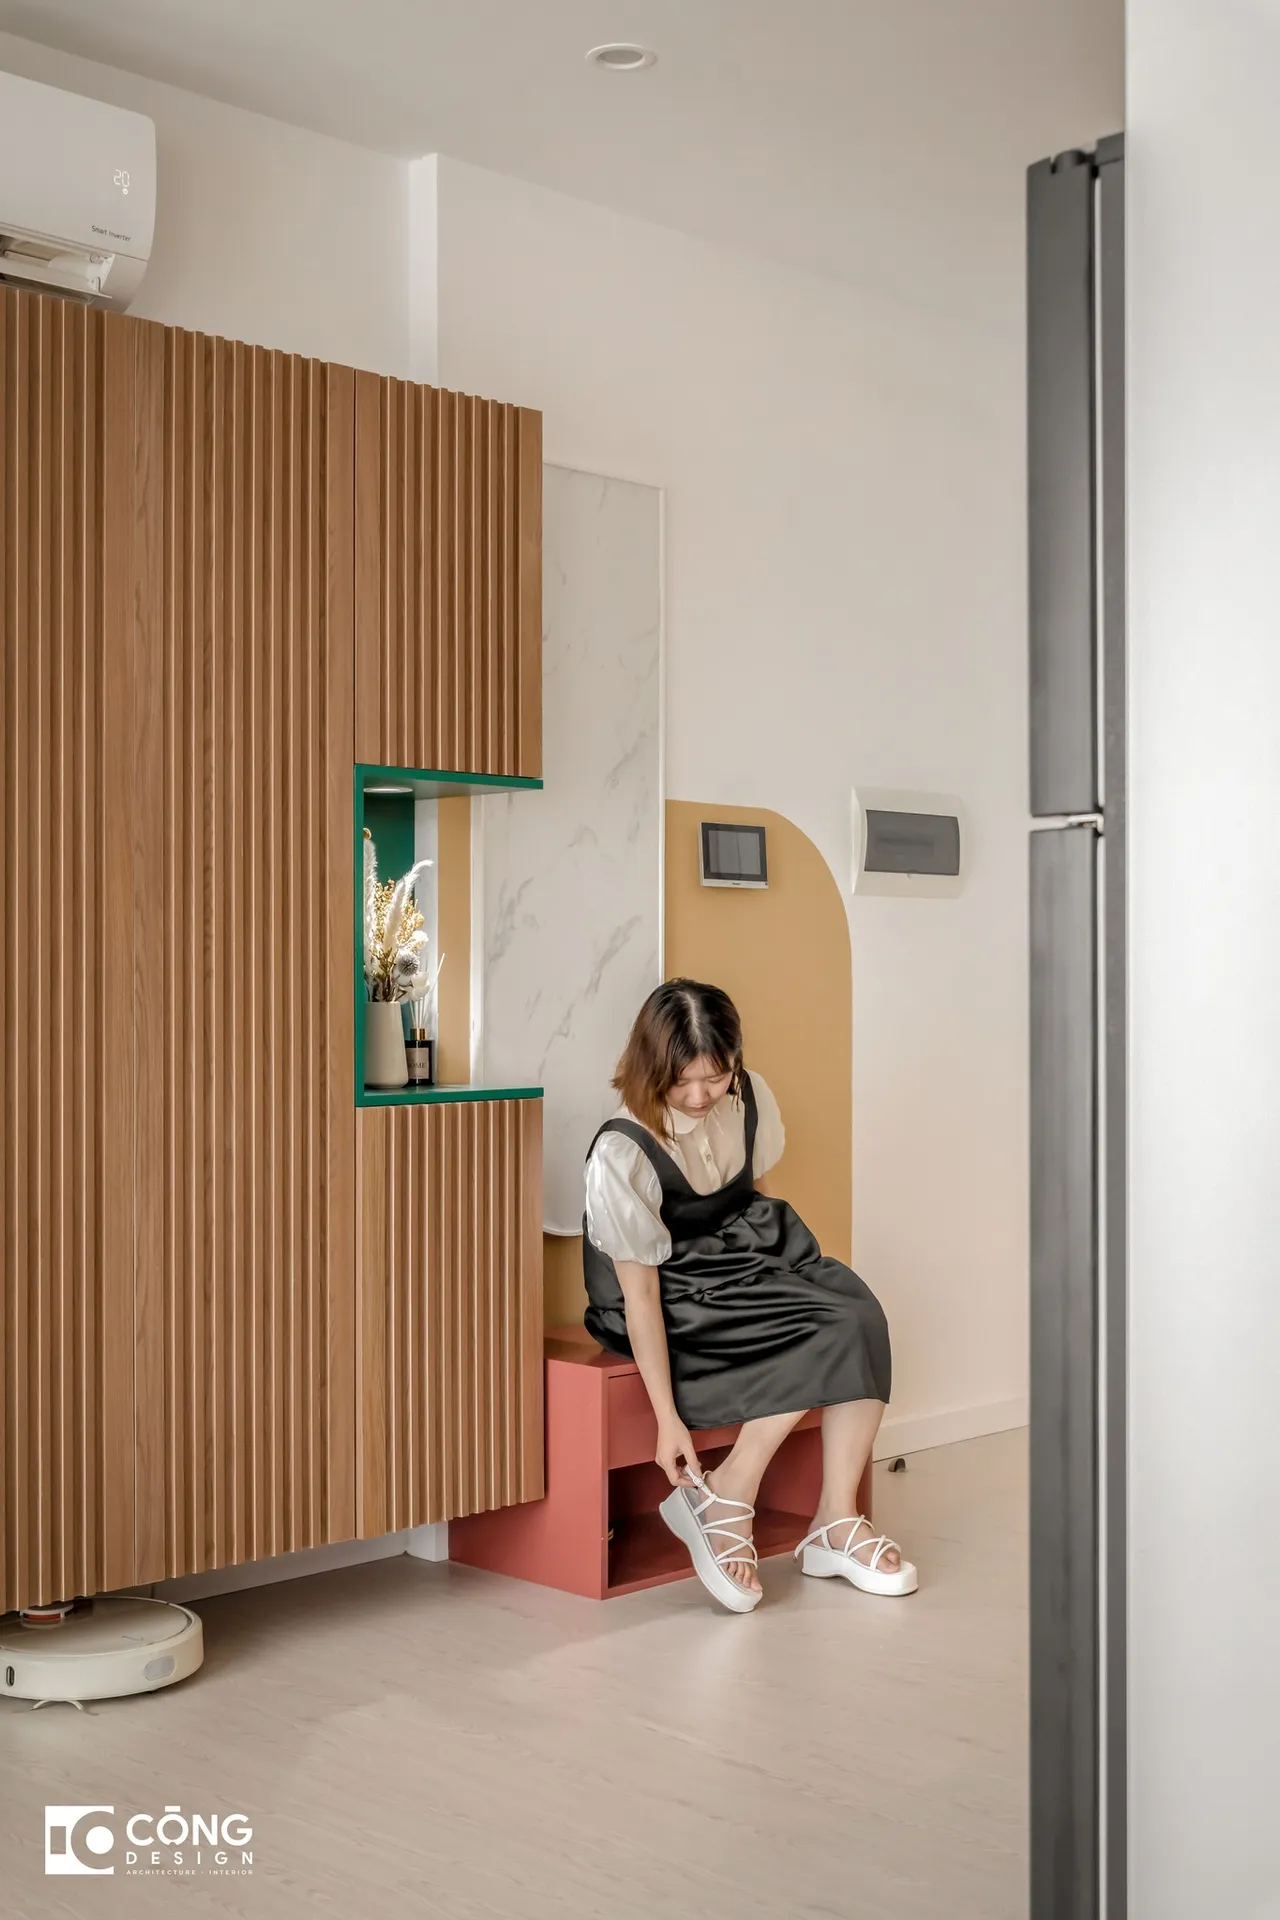 Hoàn thiện nội thất lối vào Căn hộ S503 Vinhomes Grand Park phong cách Tối giản Minimalist, phong cách Color Block